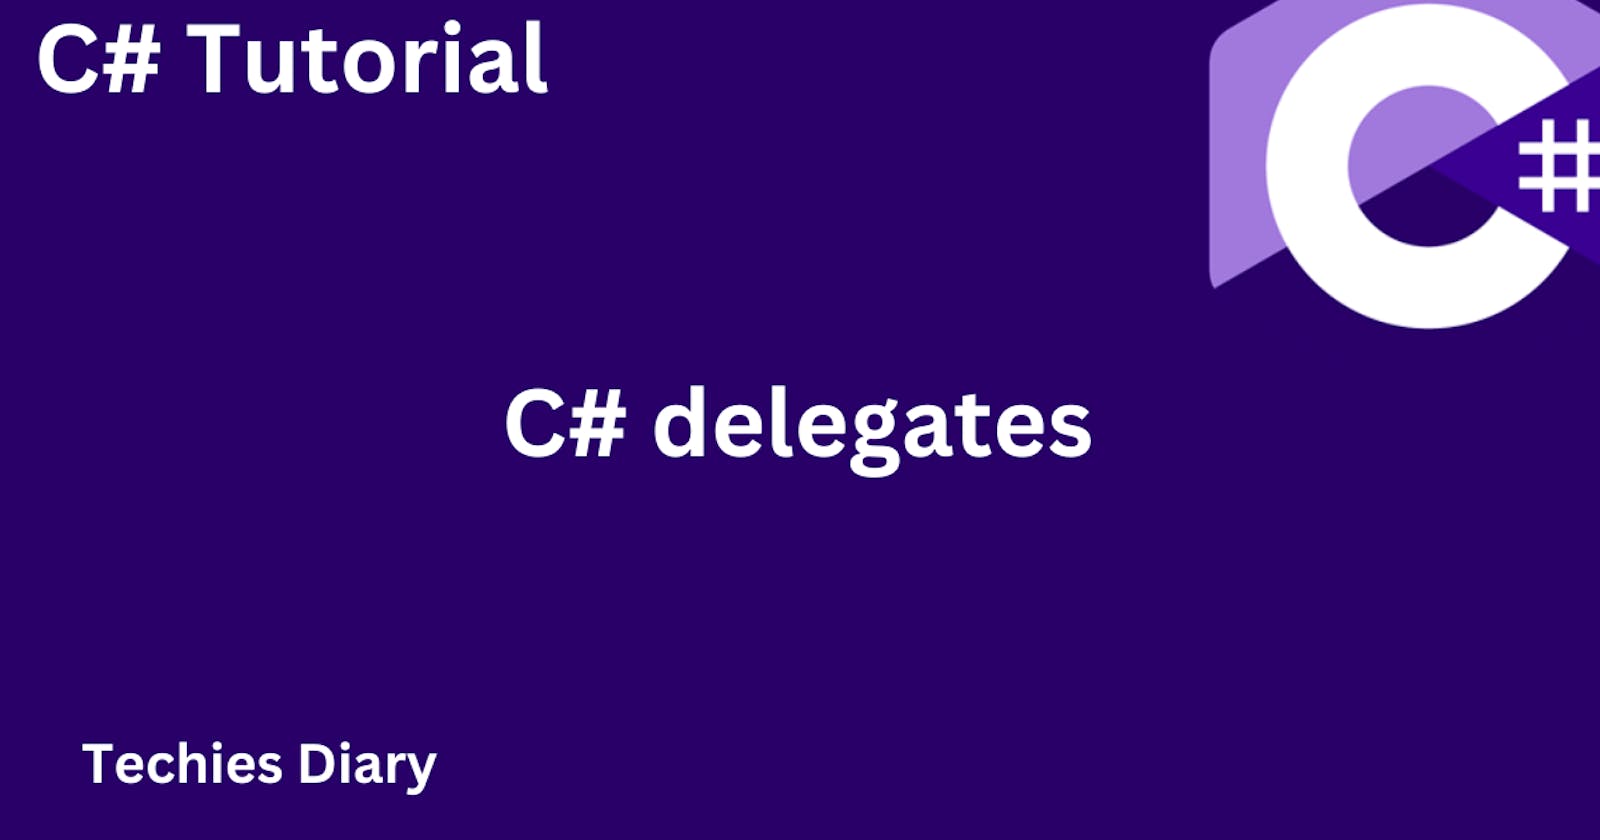 C# delegates